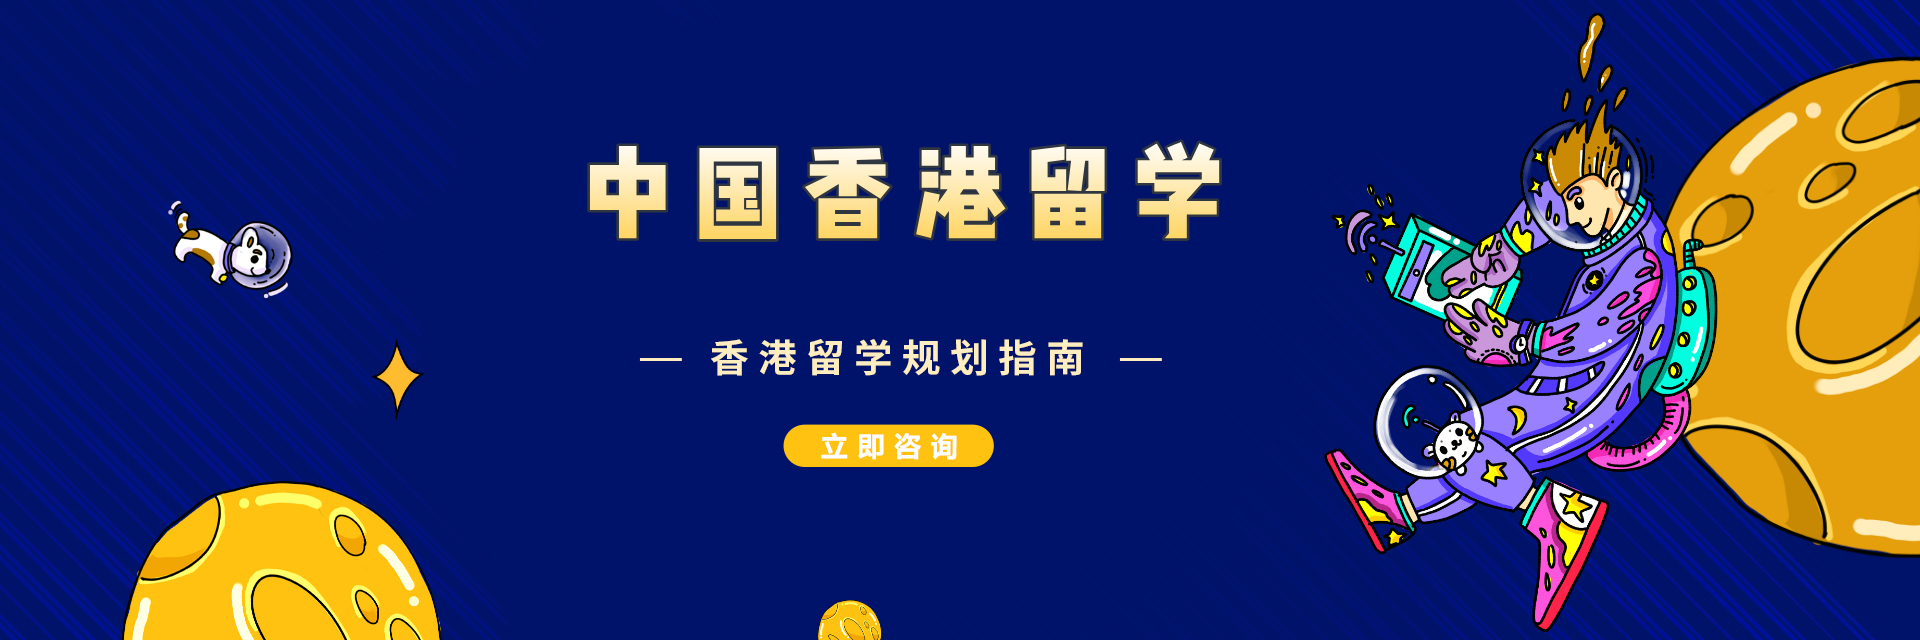 中国香港资讯页留学banner